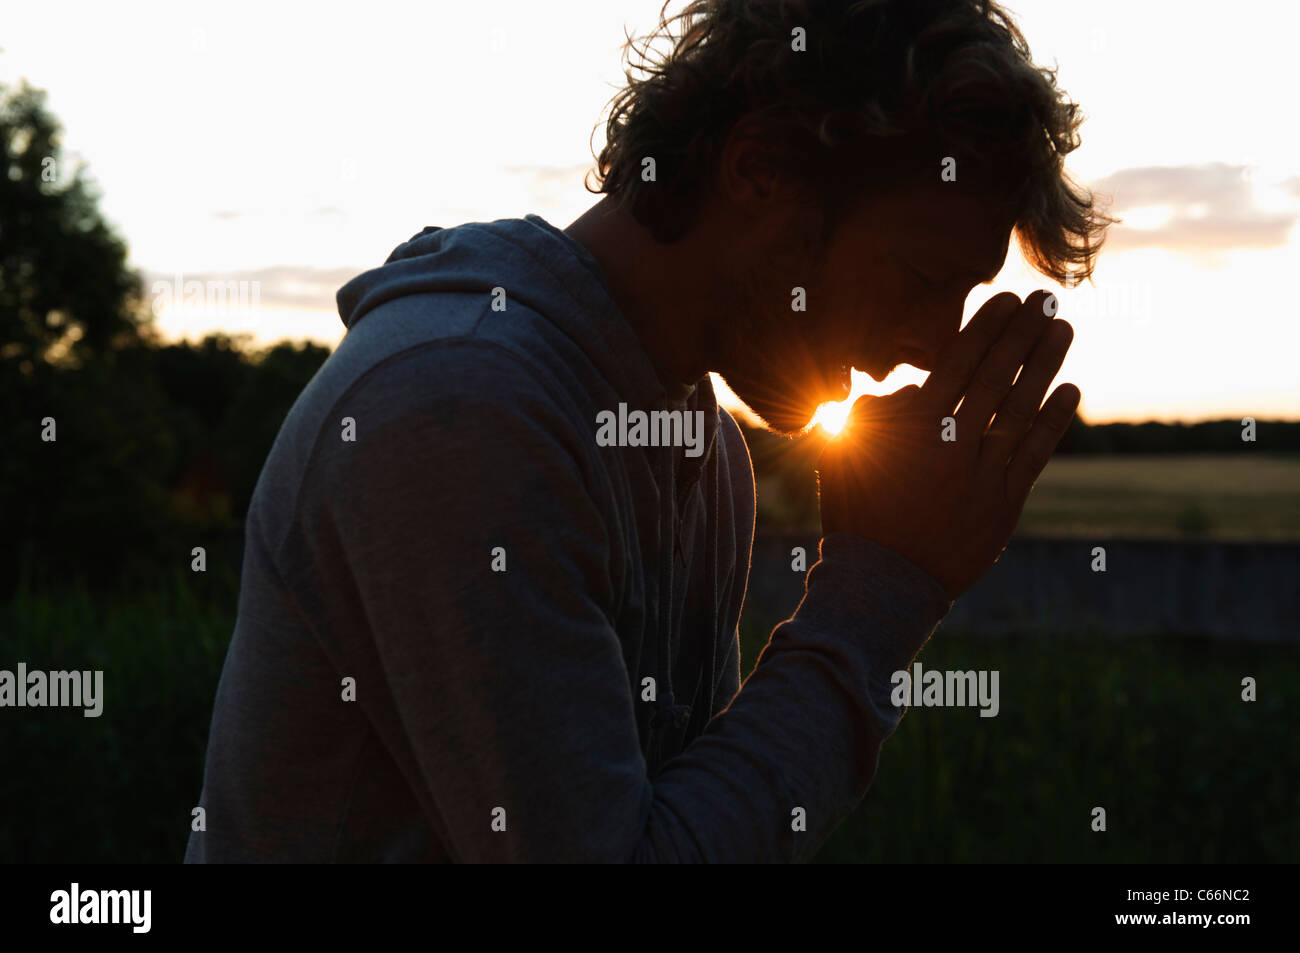 silhouette-of-man-praying-at-sunset-C66N